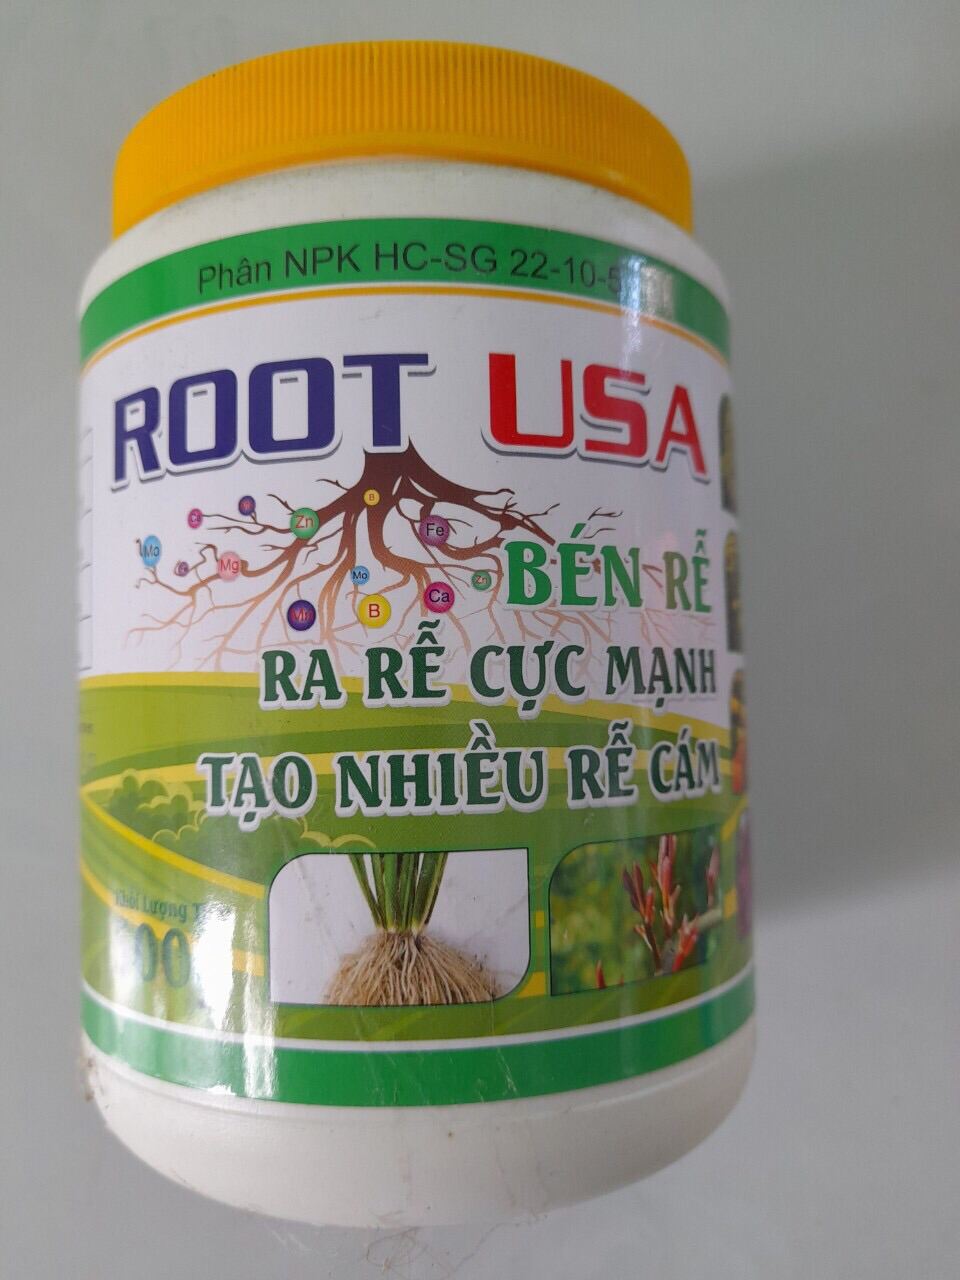 (Shop Ha79) Ra rễ cực mạnh N3M Root USA - KL: 500g